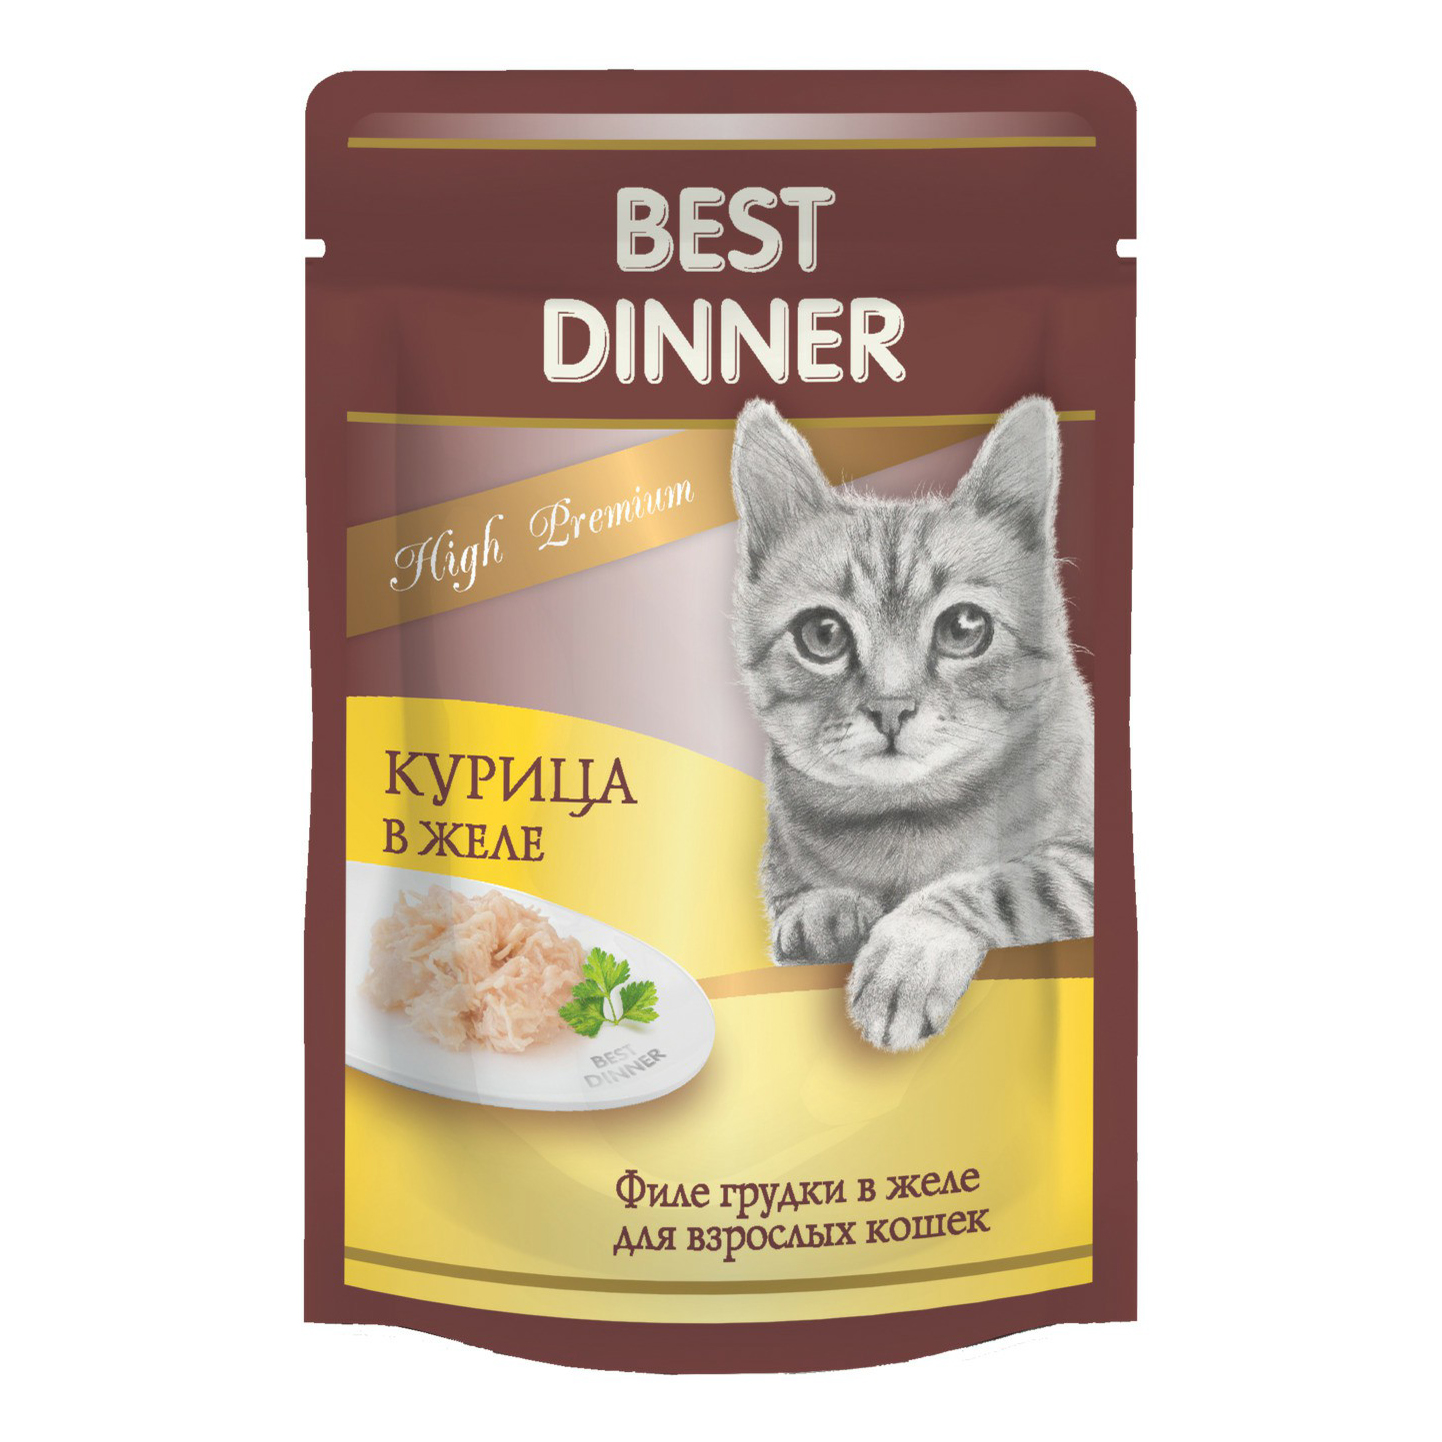 Влажный корм для кошек Best Dinner High Premium филе куриной грудки в желе 85 г